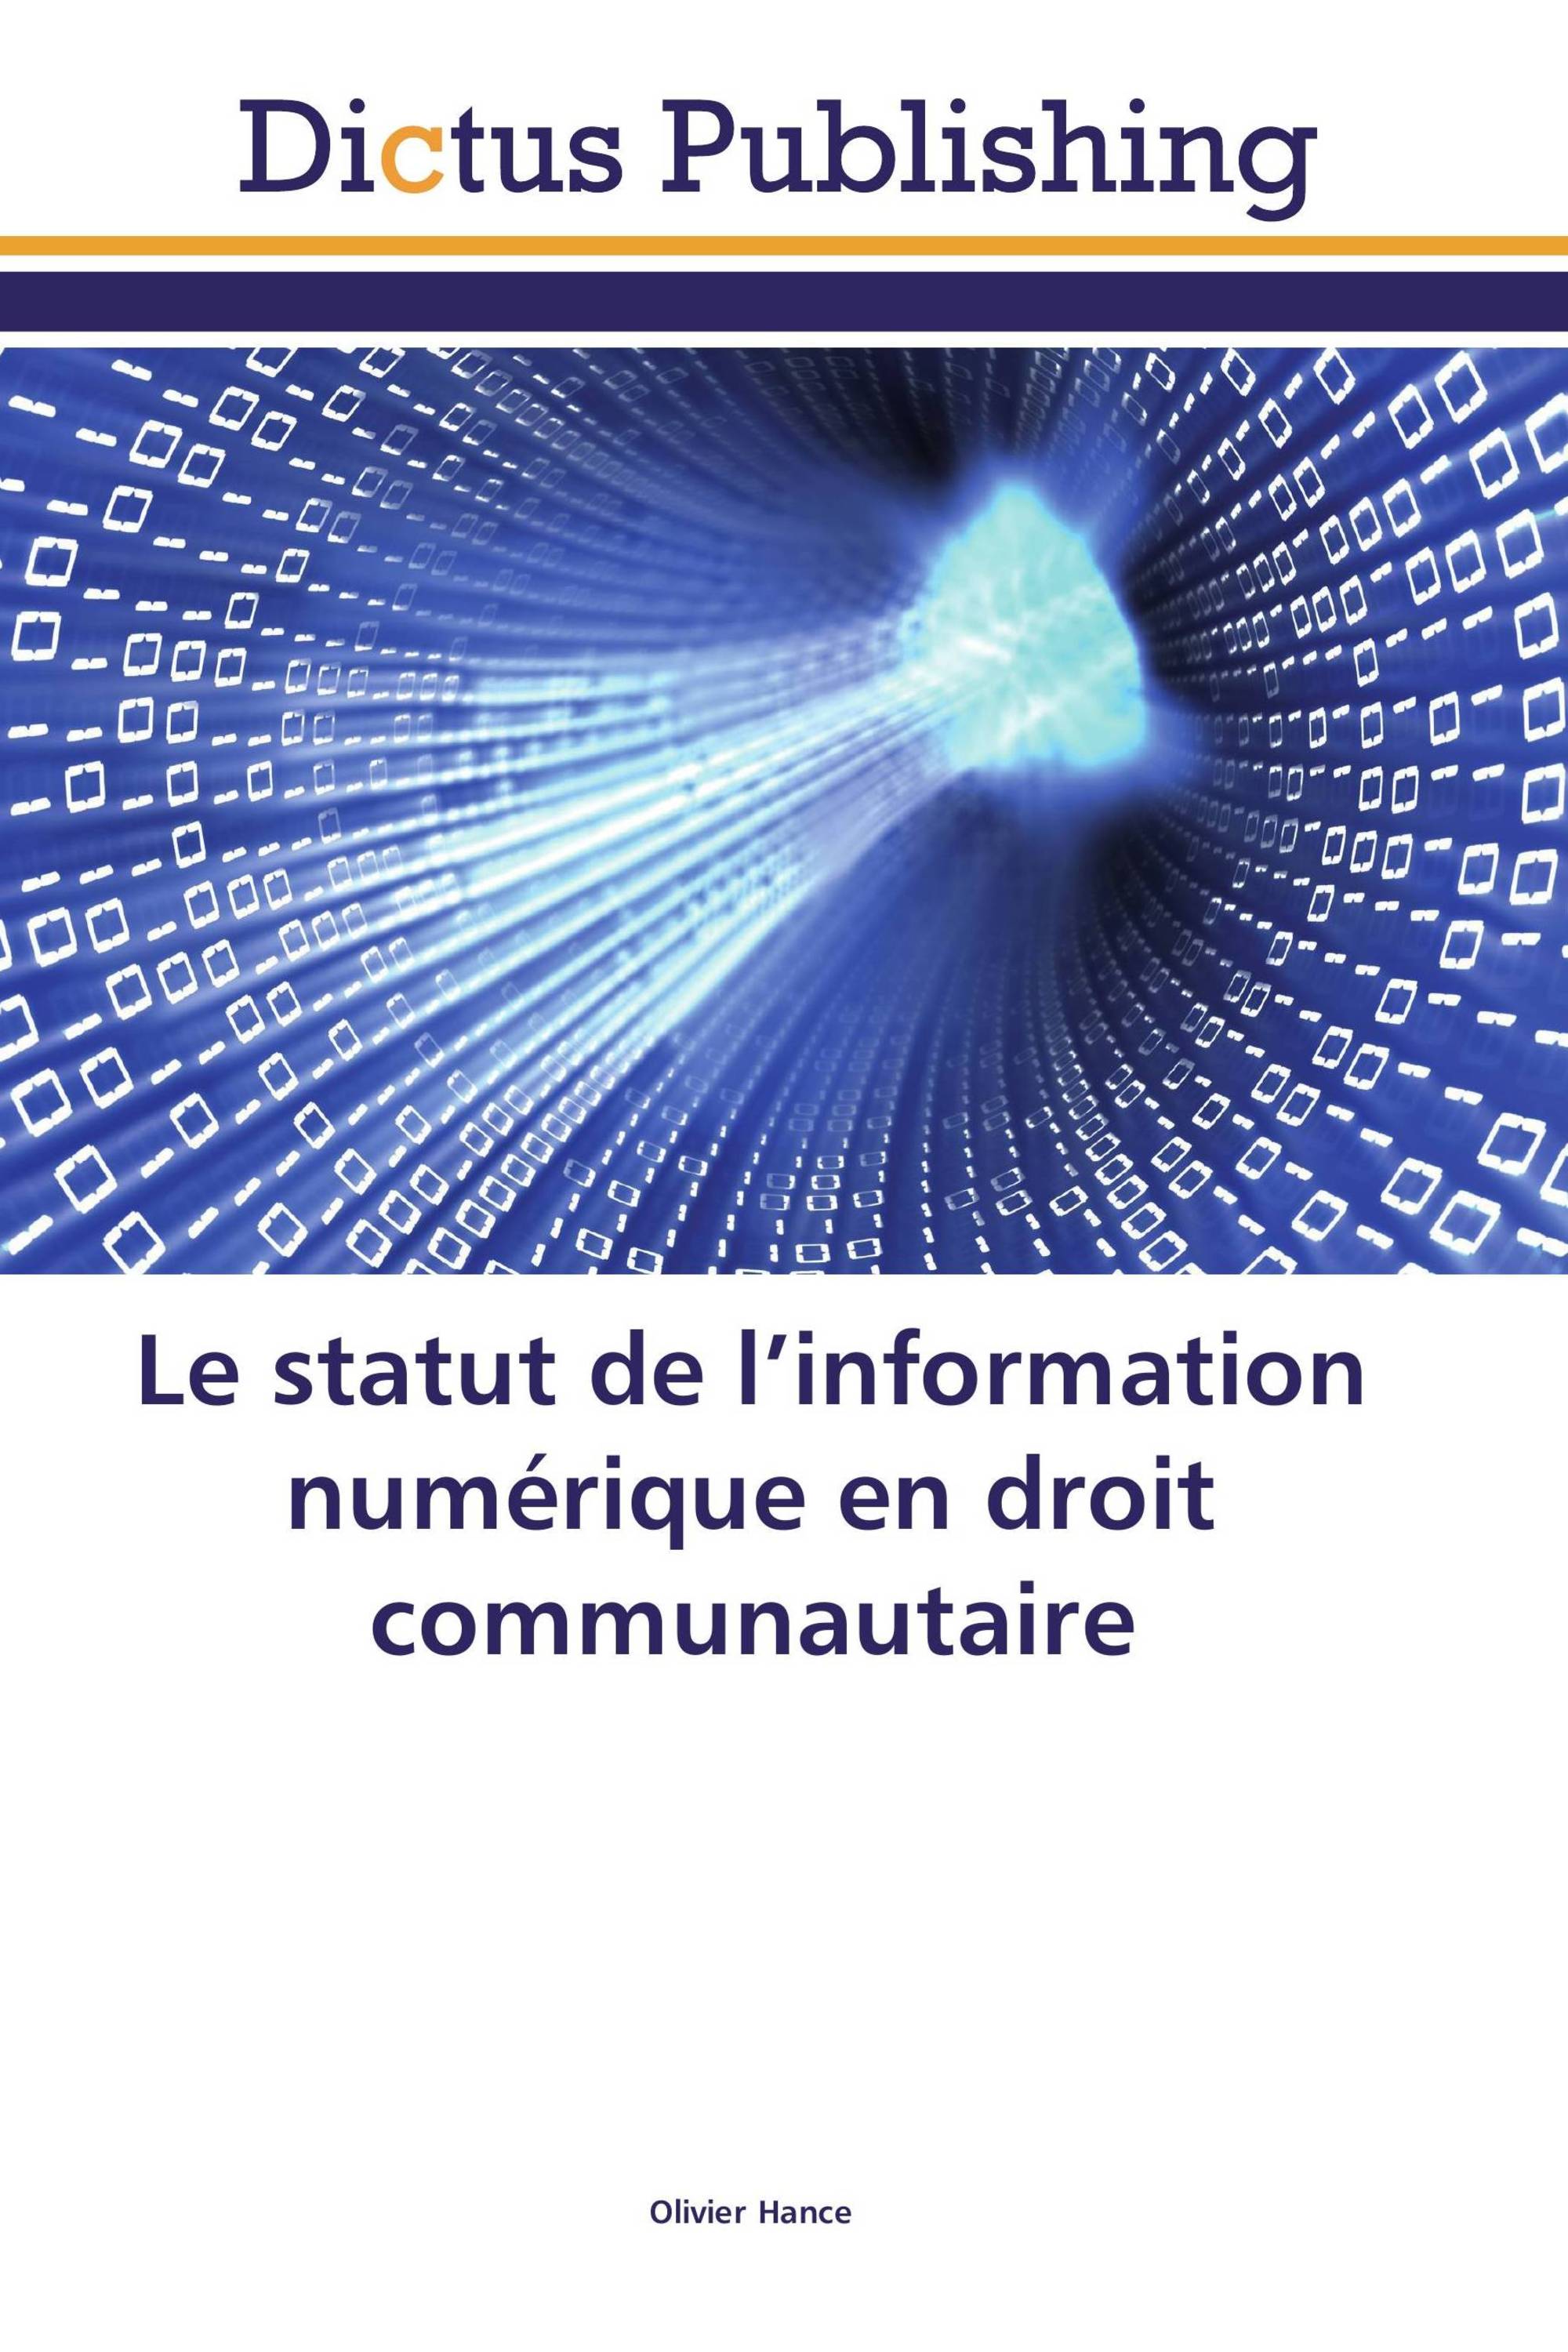 Le statut de l’information numérique en droit communautaire